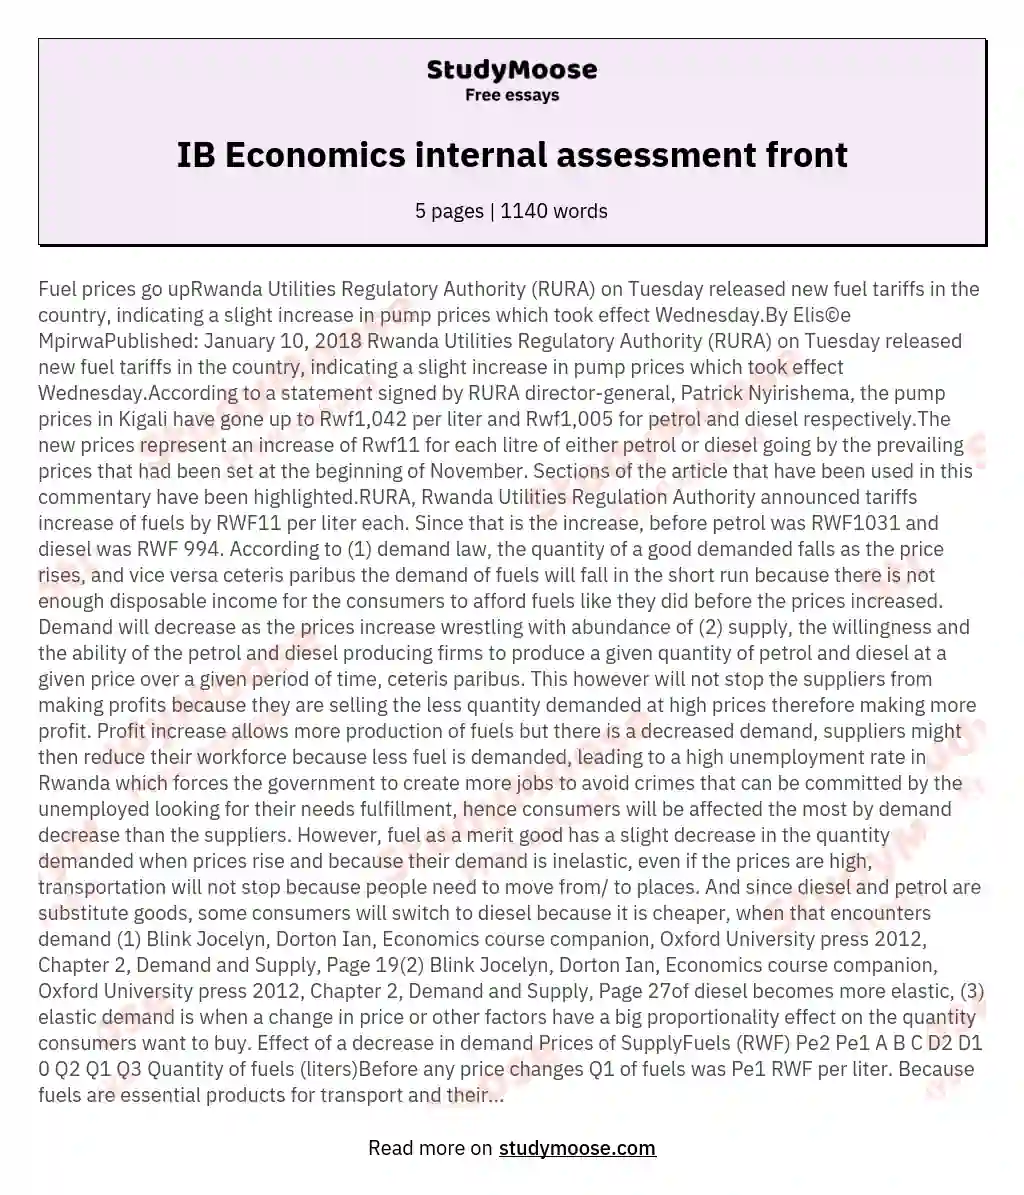 IB Economics internal assessment front essay